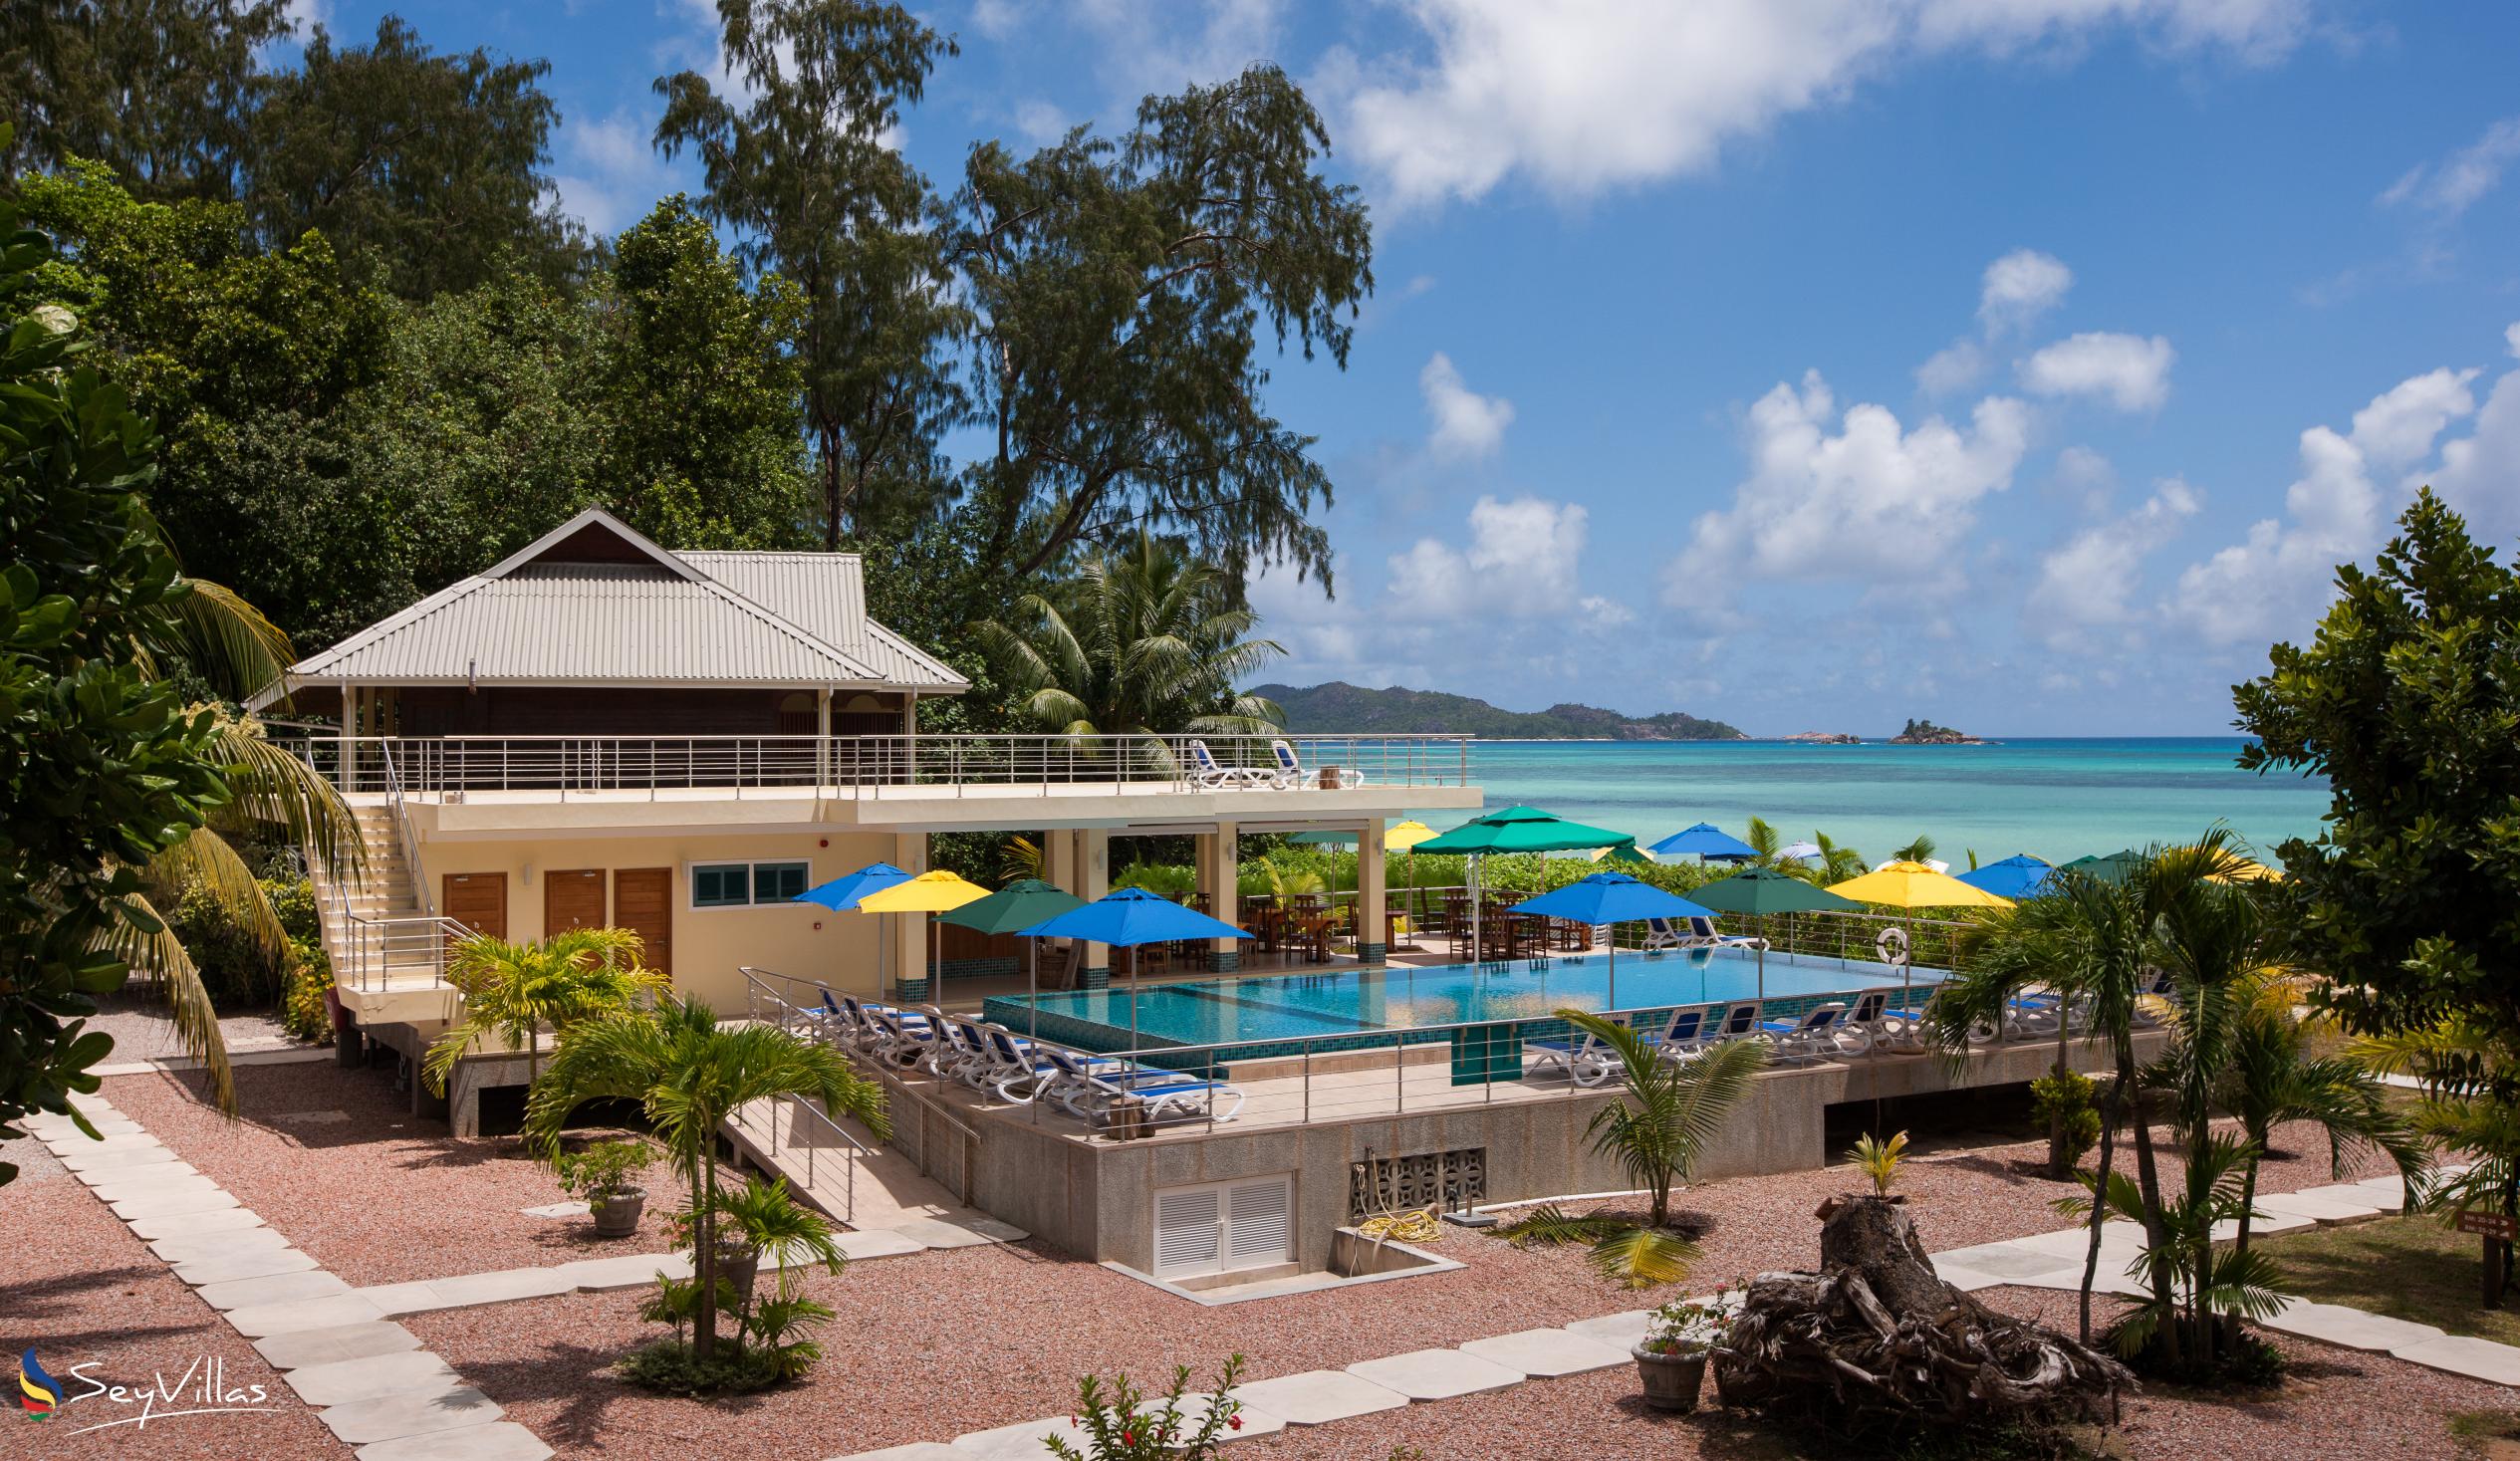 Foto 6: Acajou Beach Resort - Aussenbereich - Praslin (Seychellen)